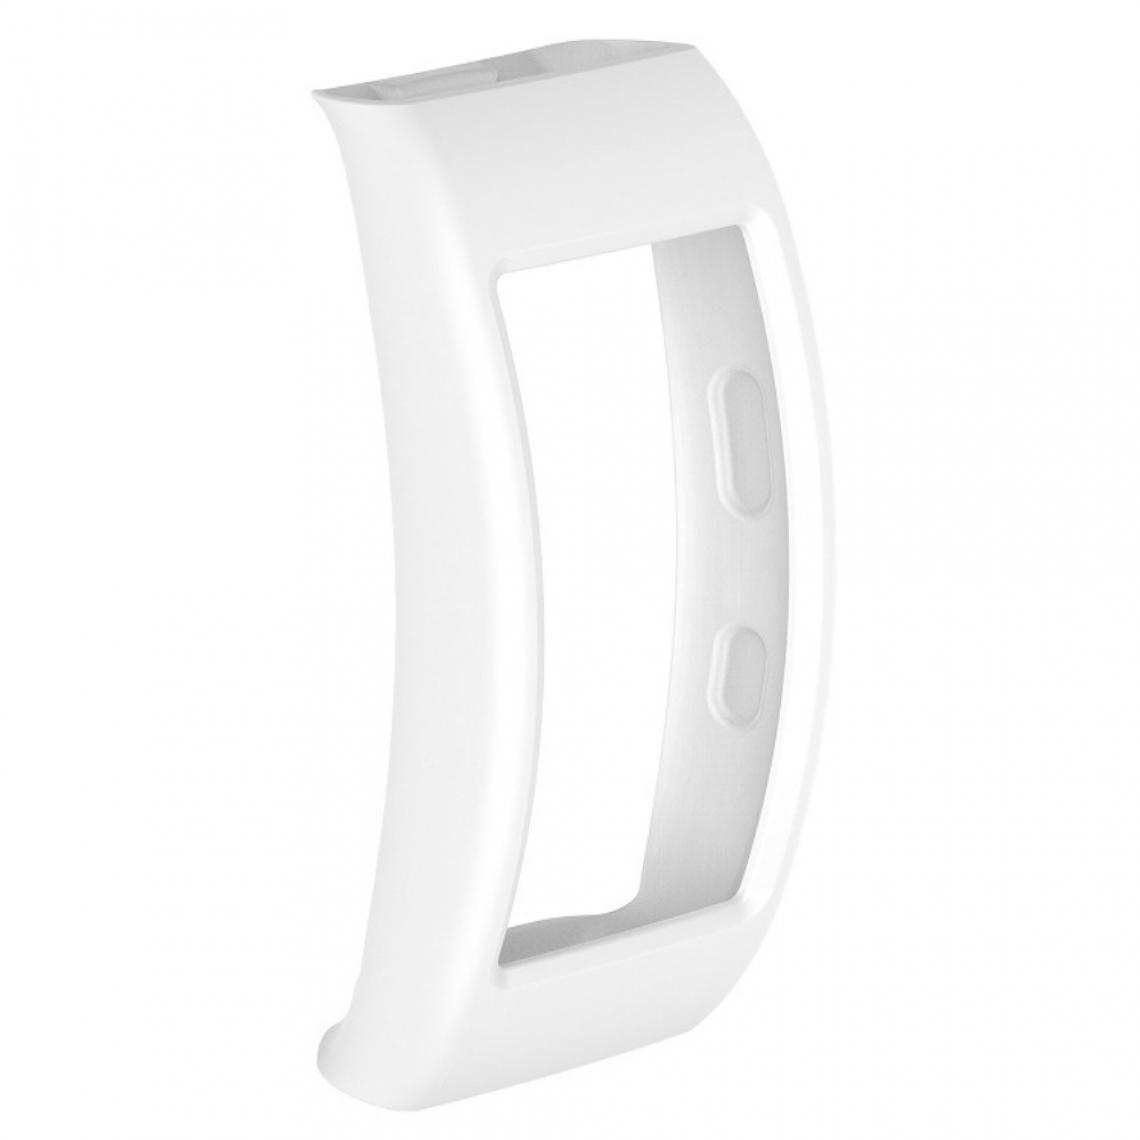 Other - Coque en silicone souple blanc pour votre Samsung Gear Fit2 Pro - Accessoires bracelet connecté